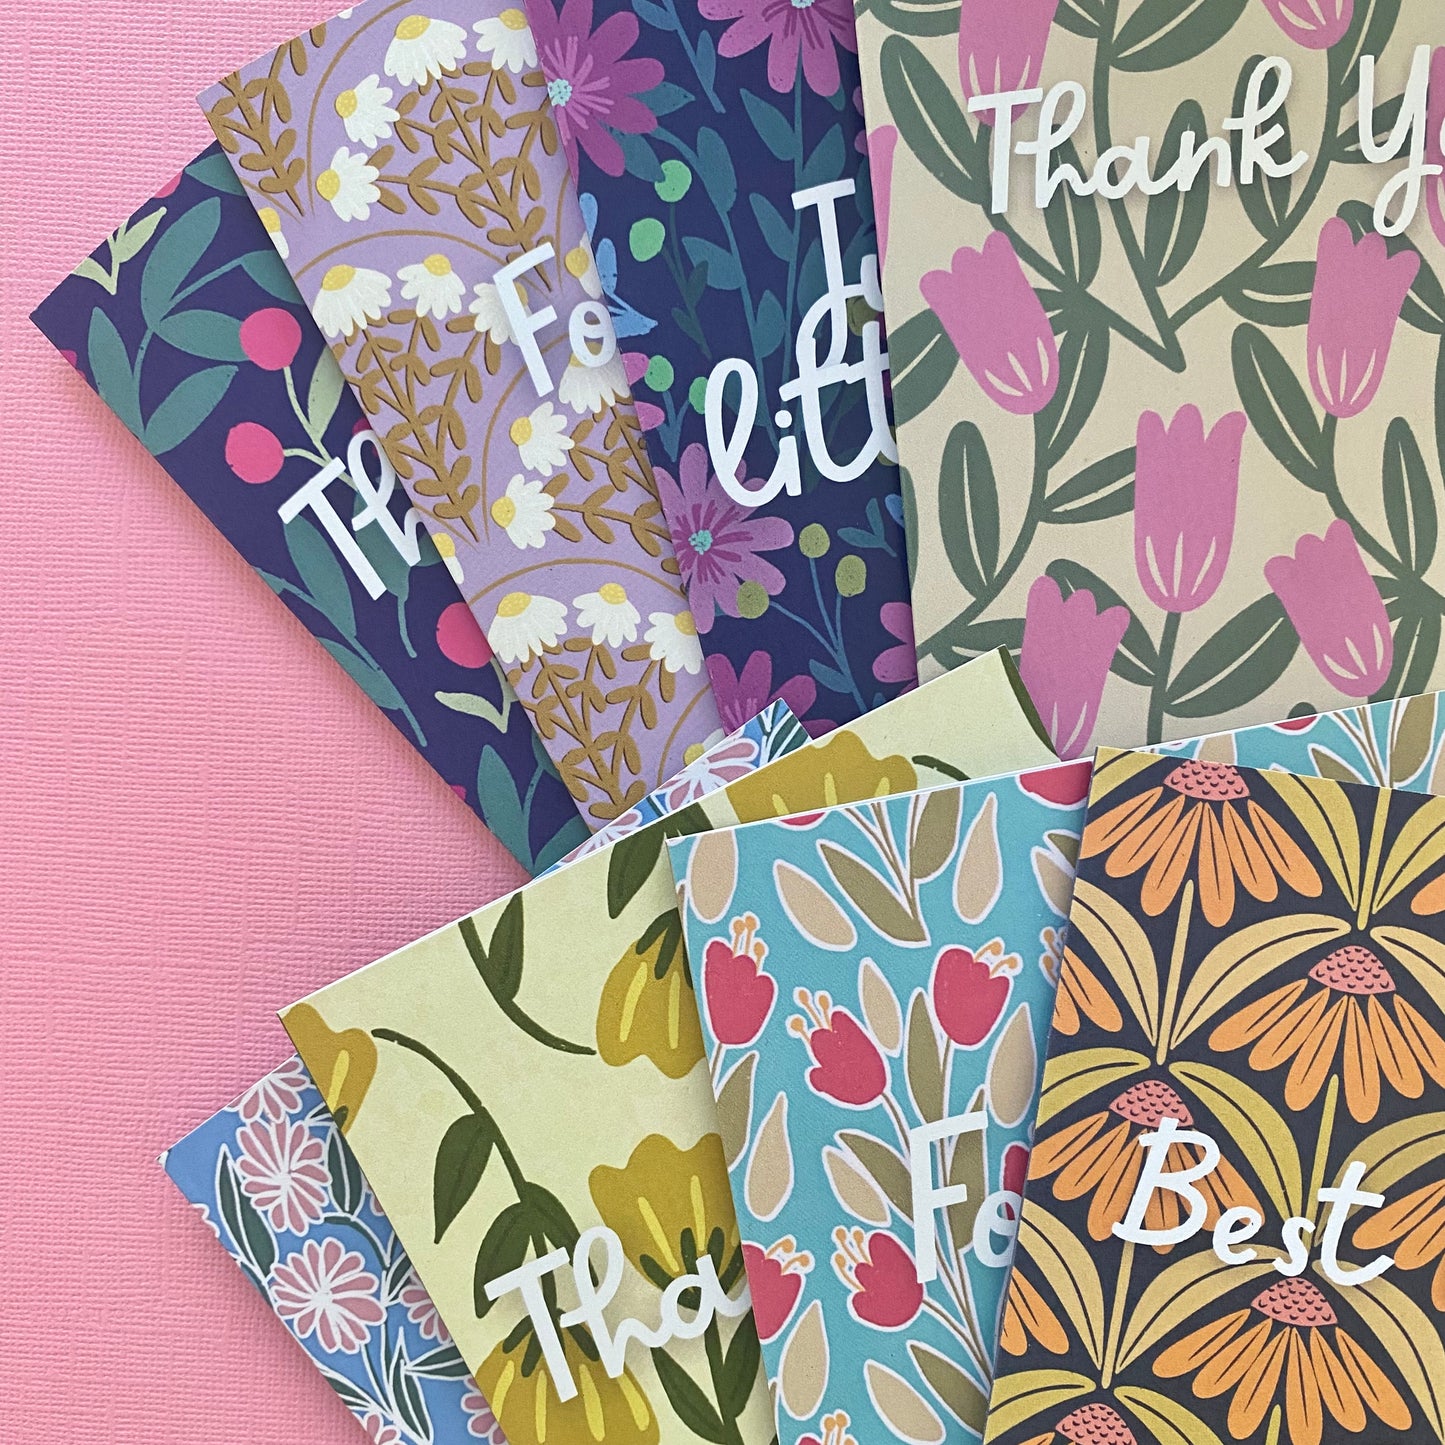 Floral Patterns - 8 Card Set